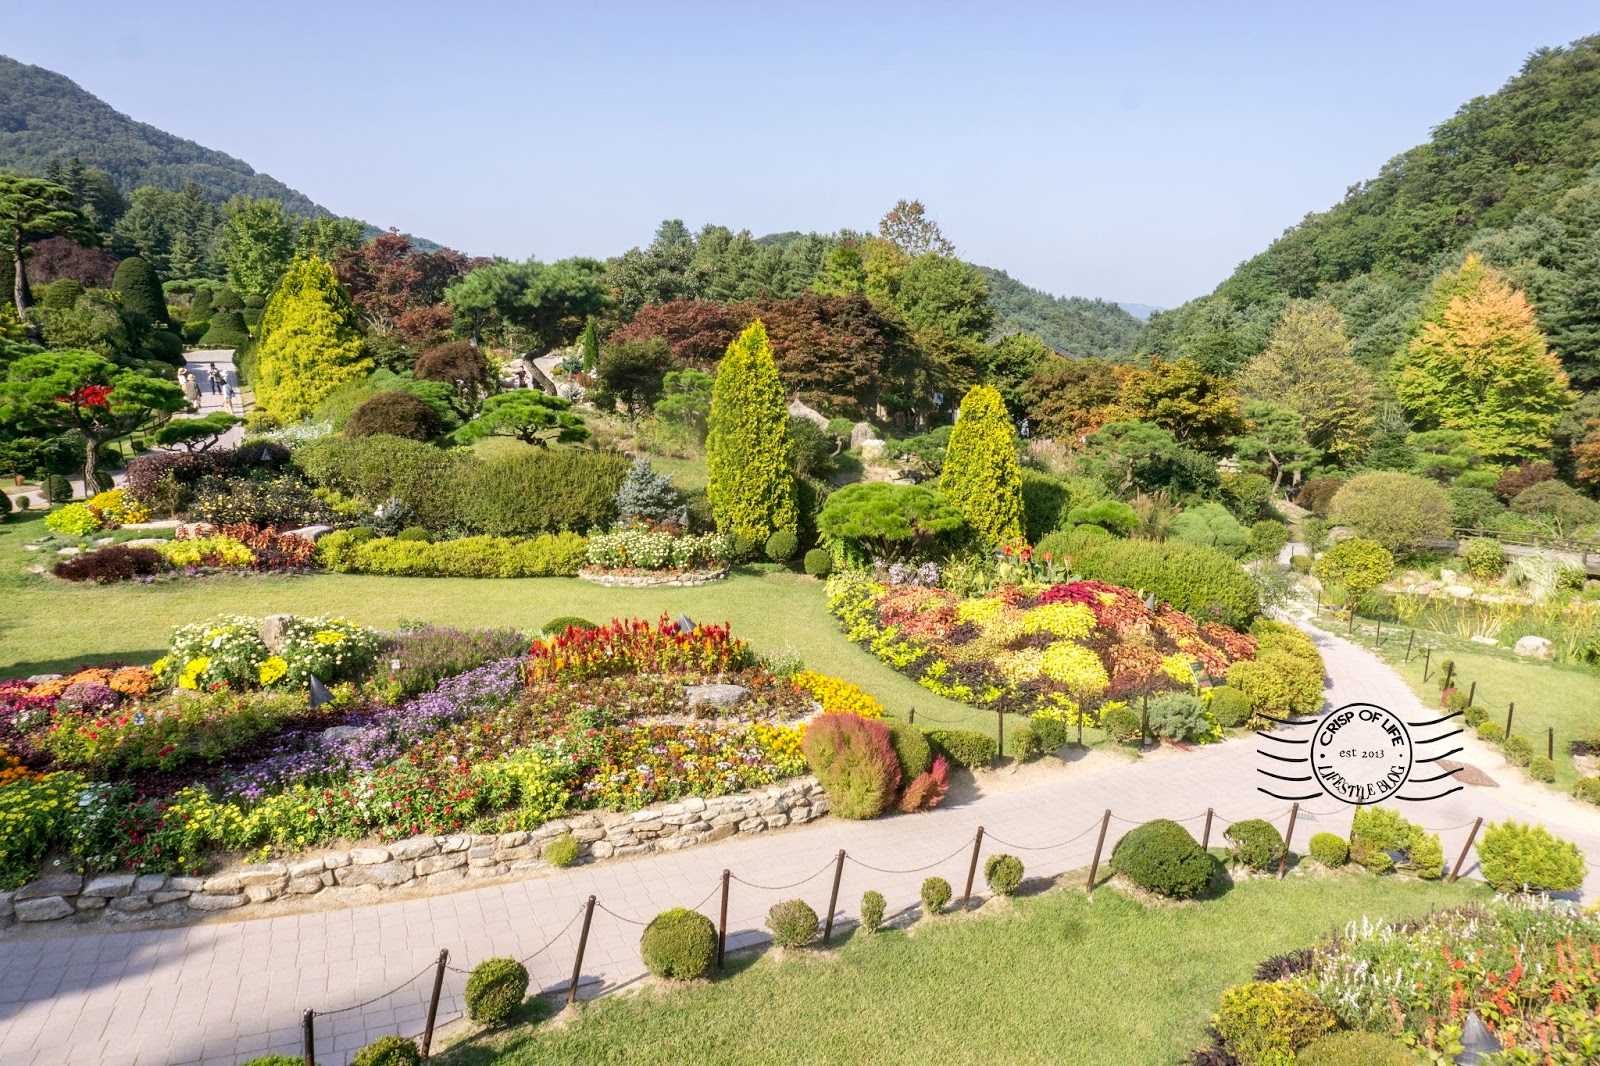 Nami Island Garden of Morning Calm South Korea